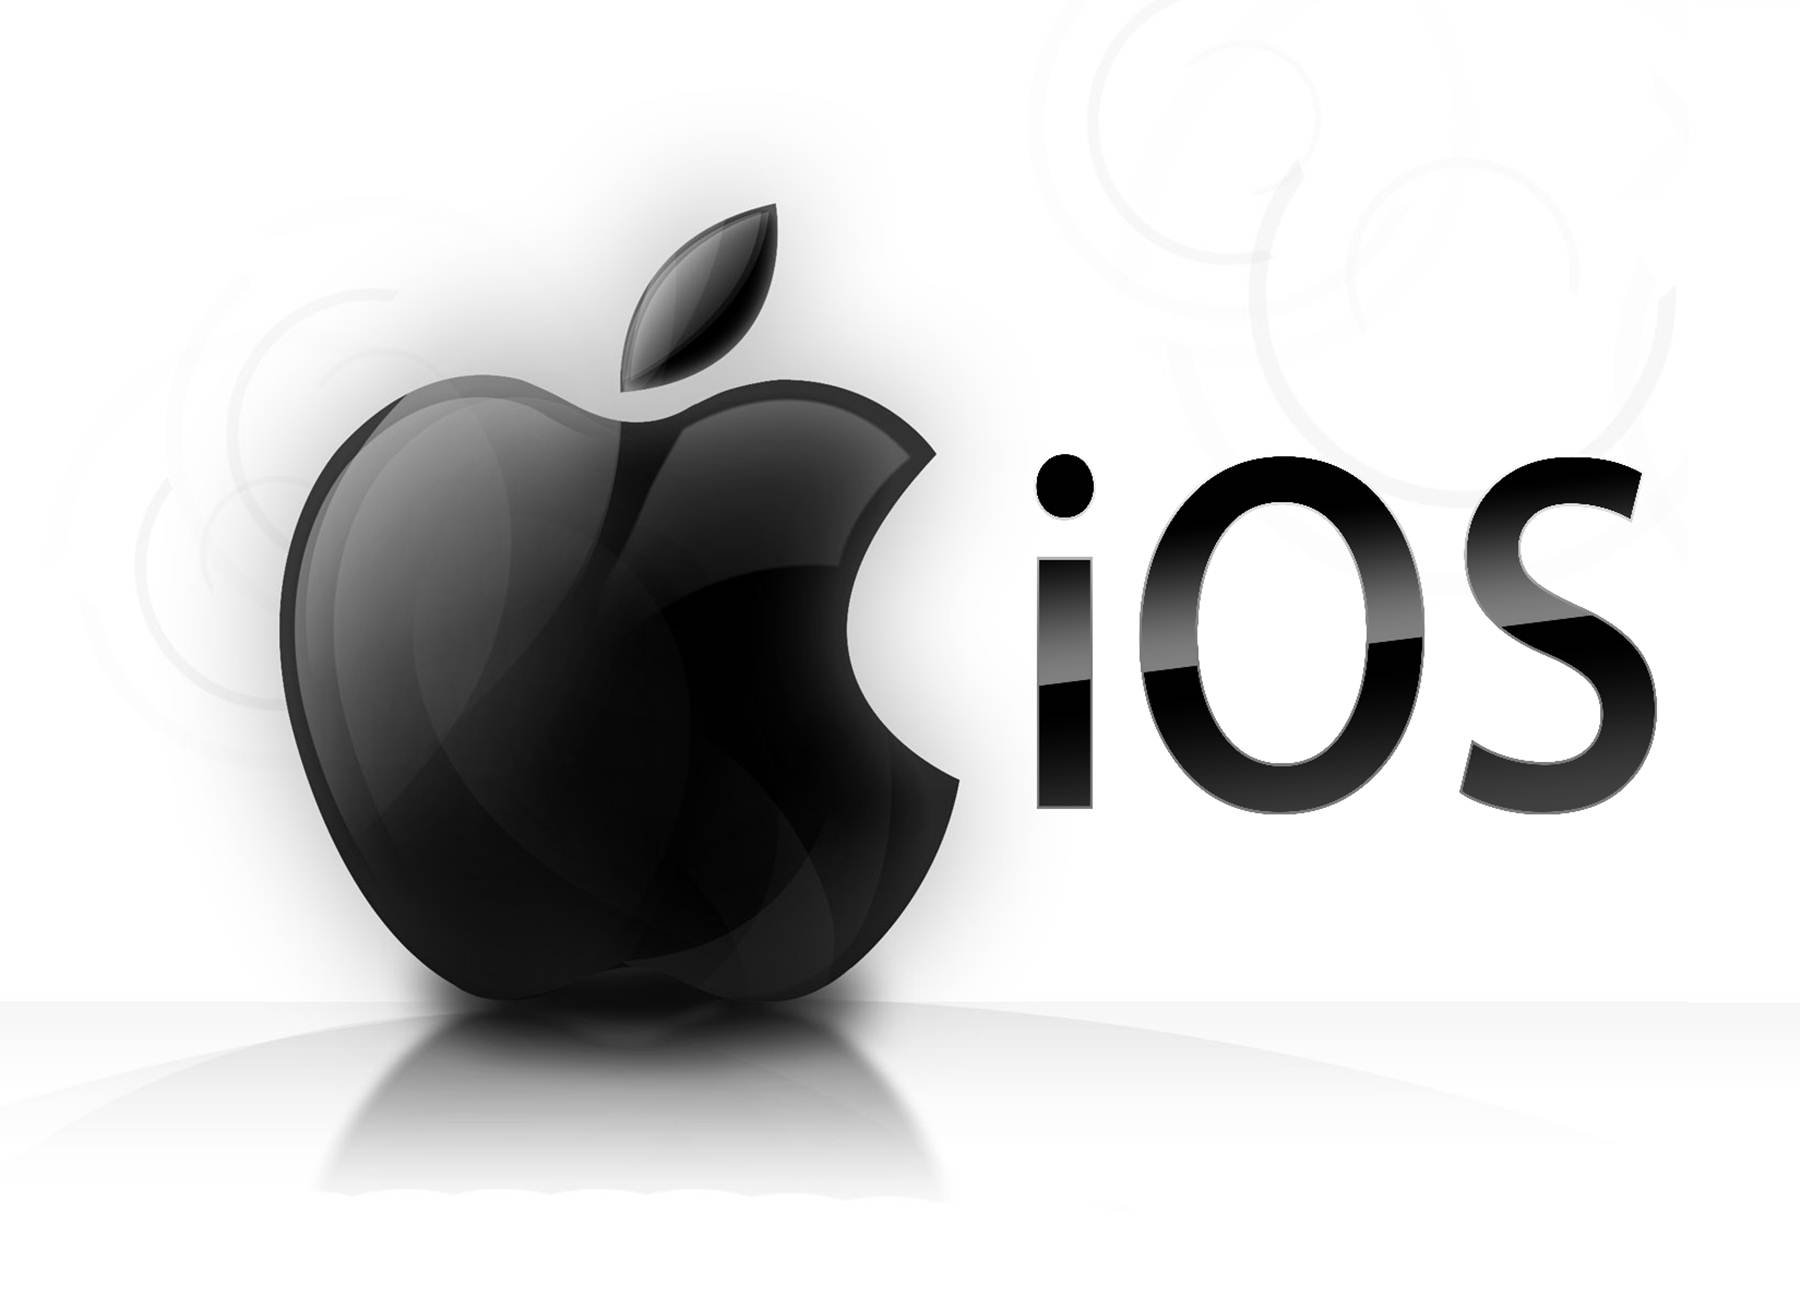 Установка прошивки iOS 9.3.2 может представлять опасность для iPad Pro 9.7